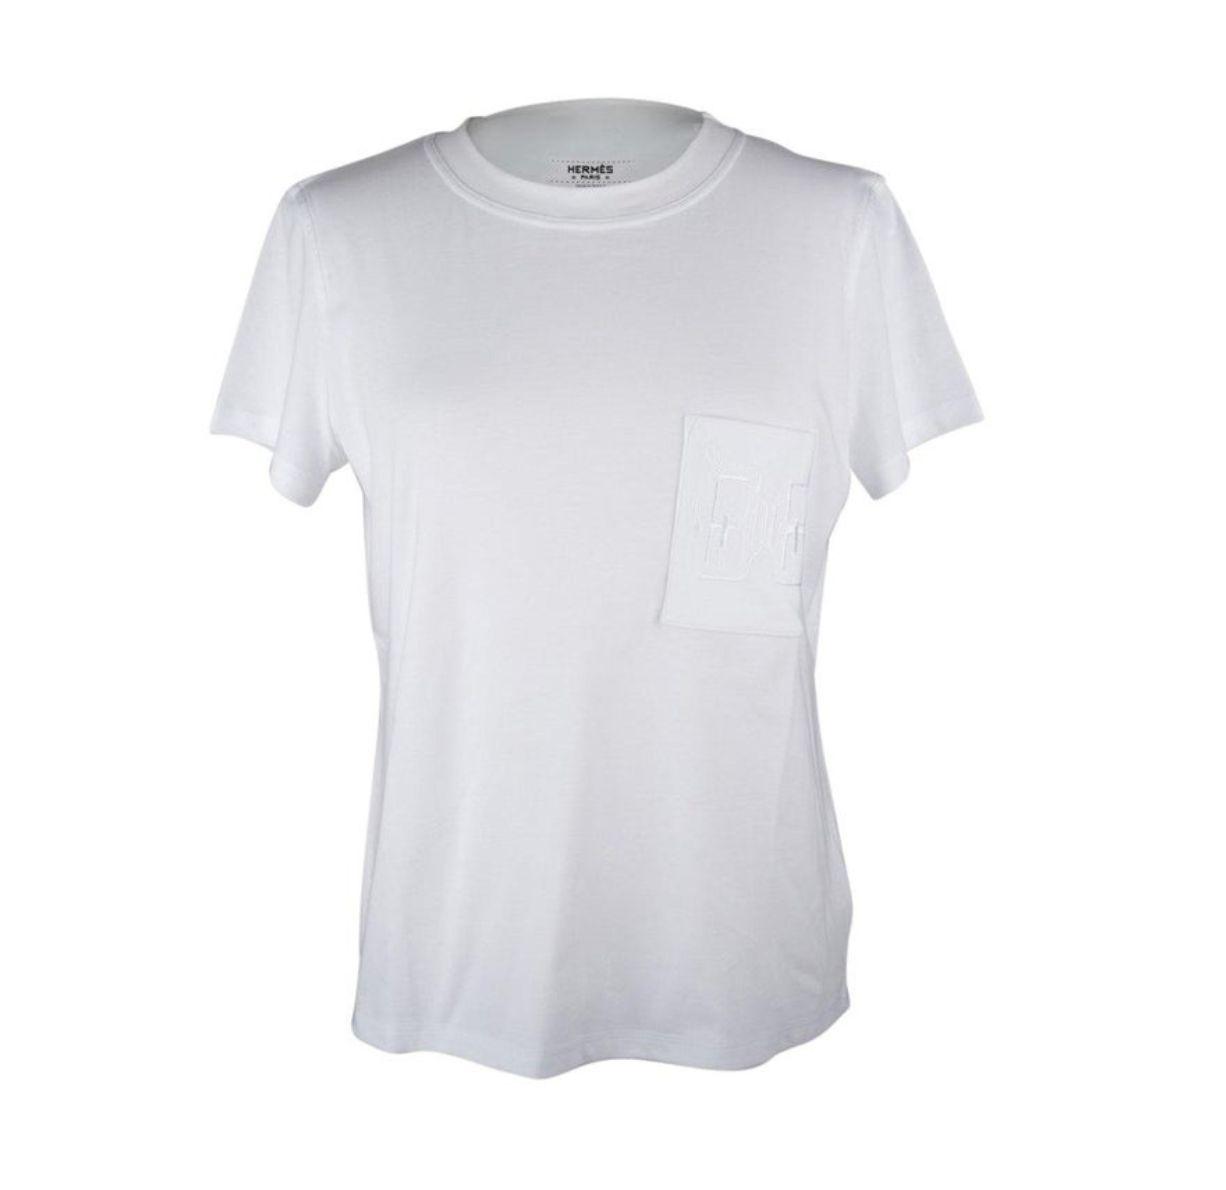 Hermes Vintage White Tshirt